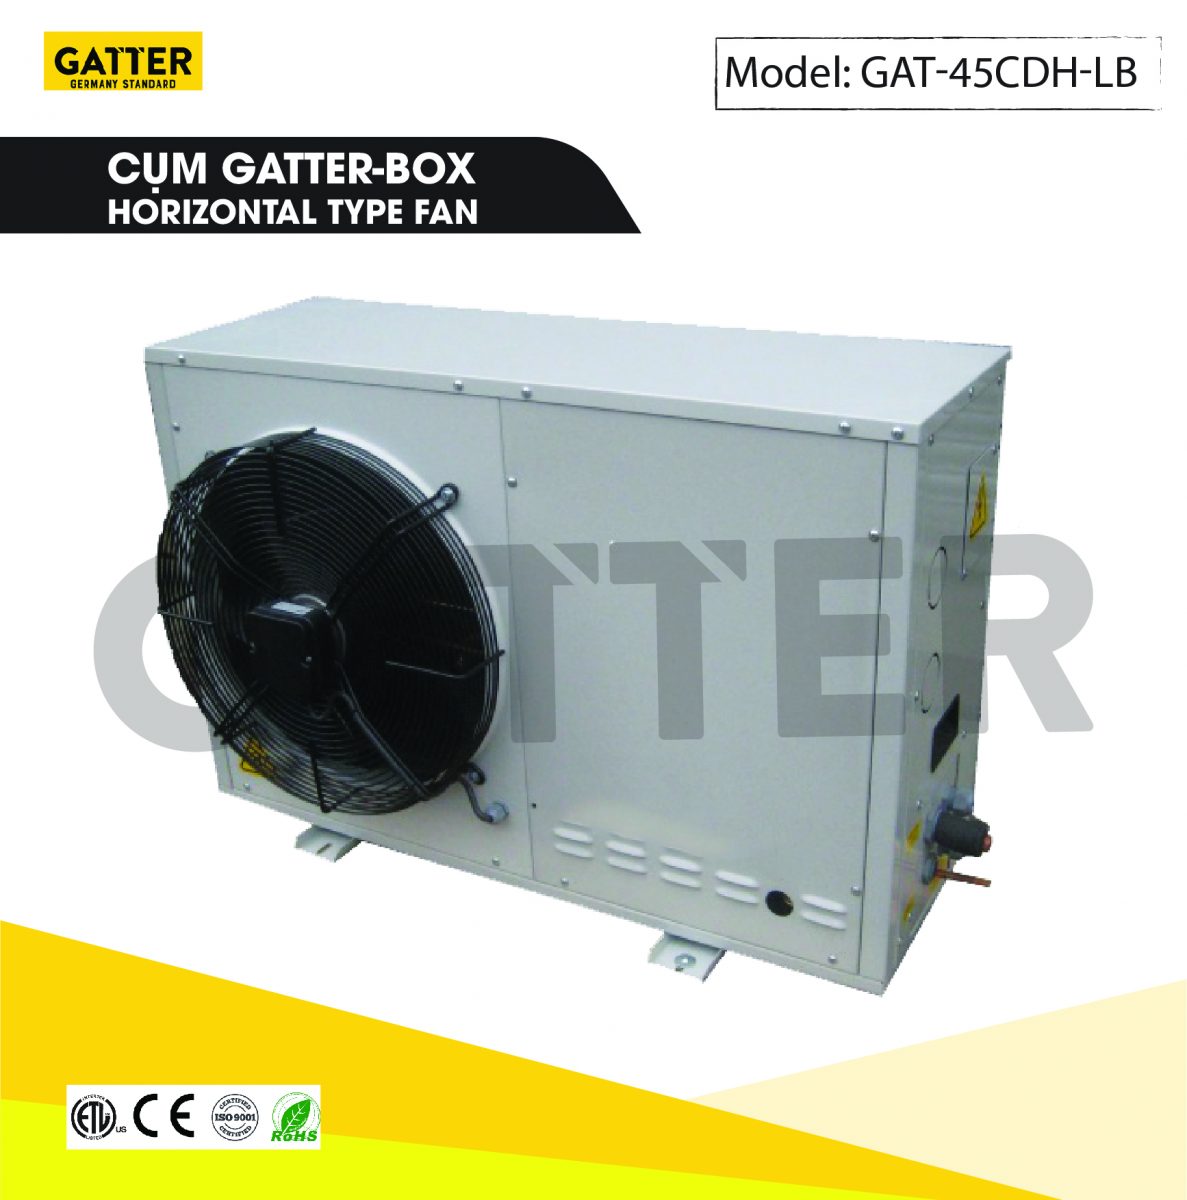 Cụm máy nén Gatter-box GAT-45CDH-LB